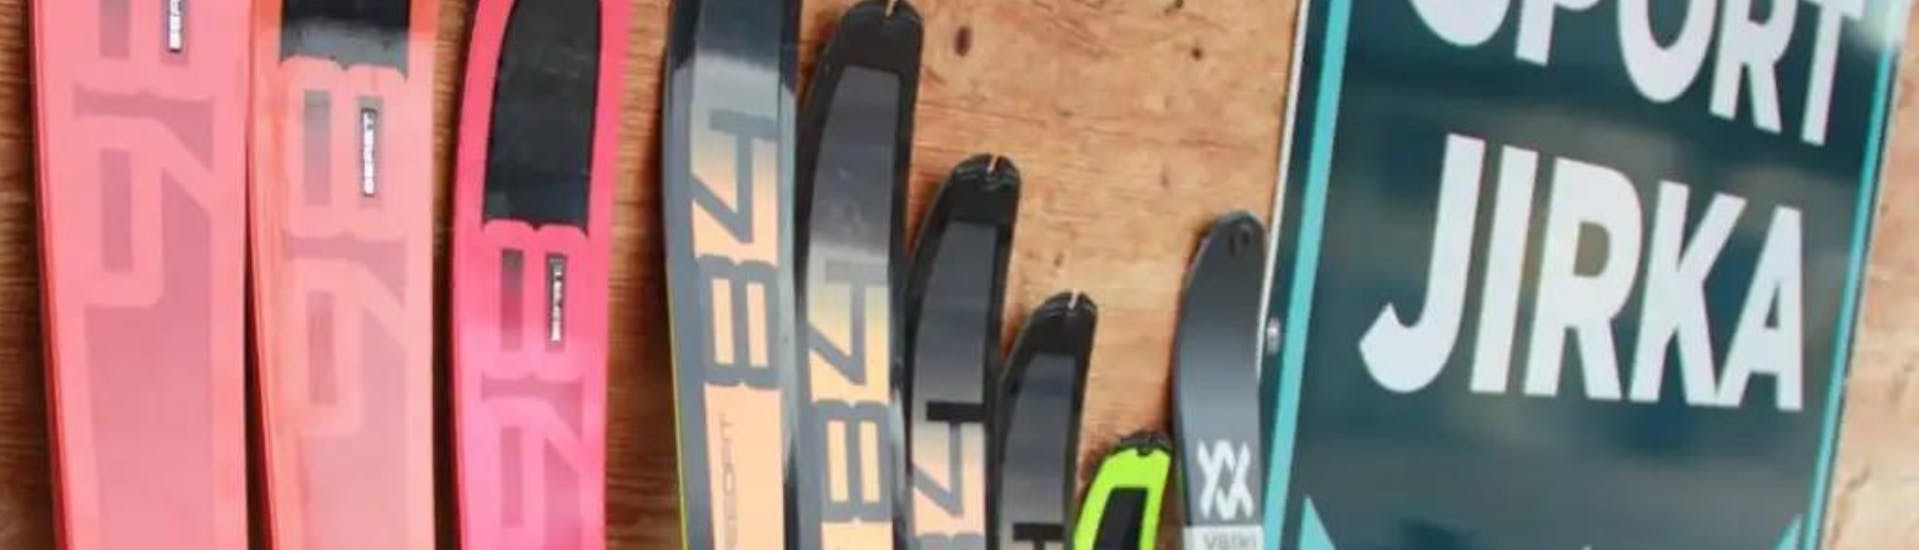 Ein Bild von Verleih-Skis bei Skiverleih Sport Jirka.